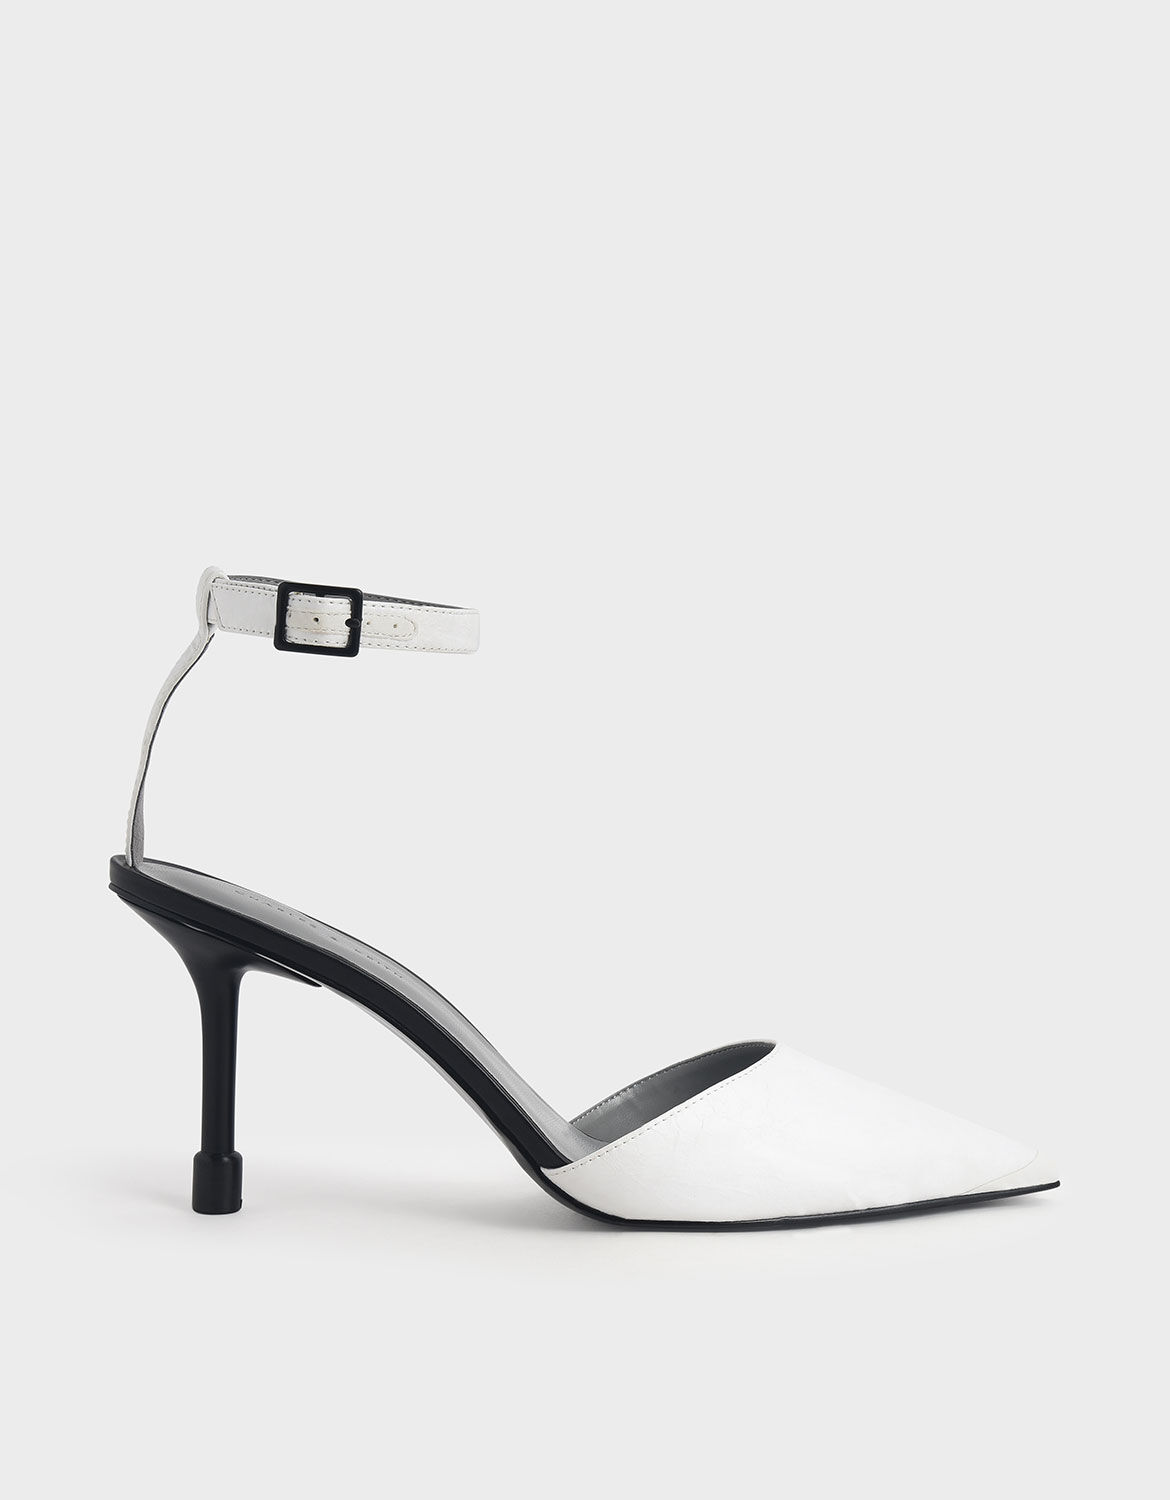 white stilettos with ankle strap